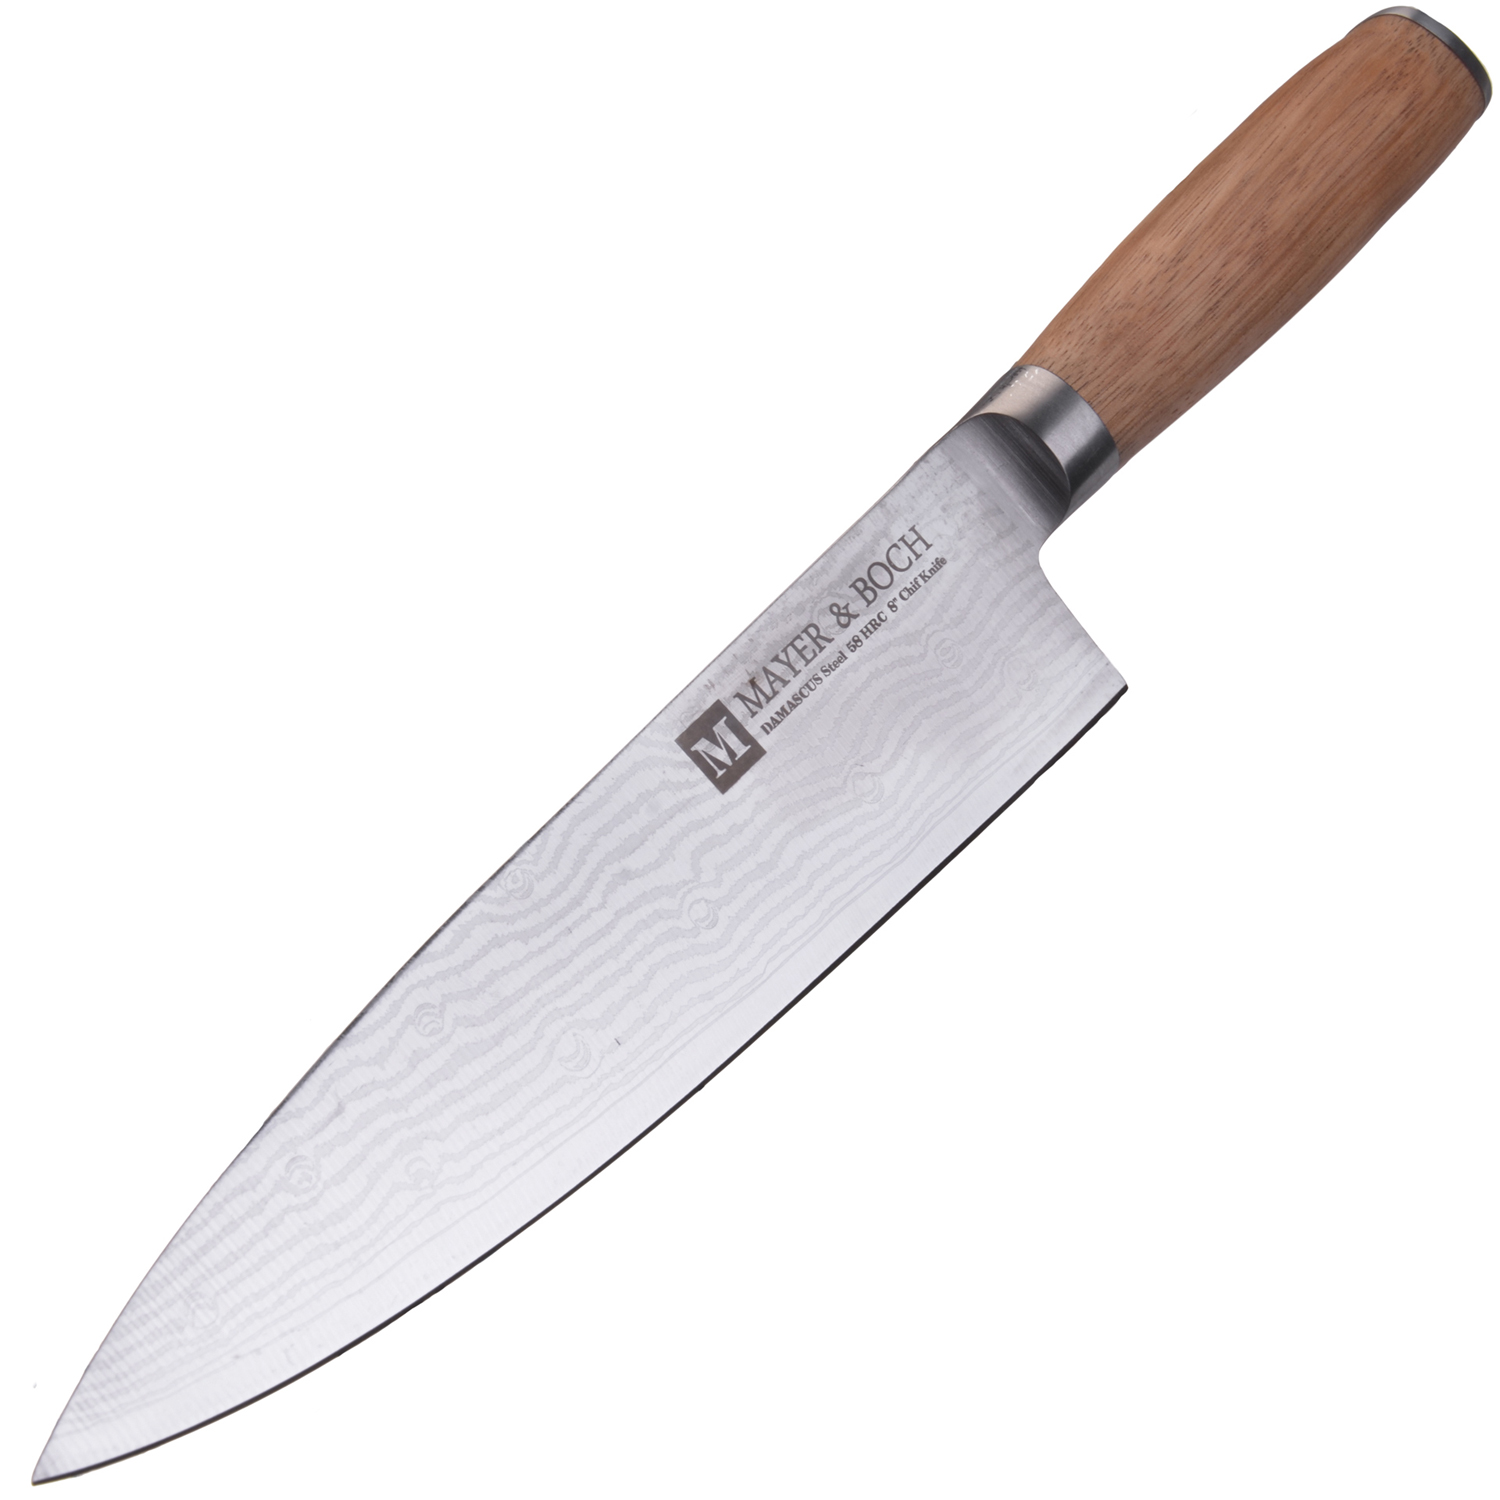 фото Нож поварской Mayer & Boch Zenon, цвет: коричневый, серебристый, длина лезвия 20,3 см